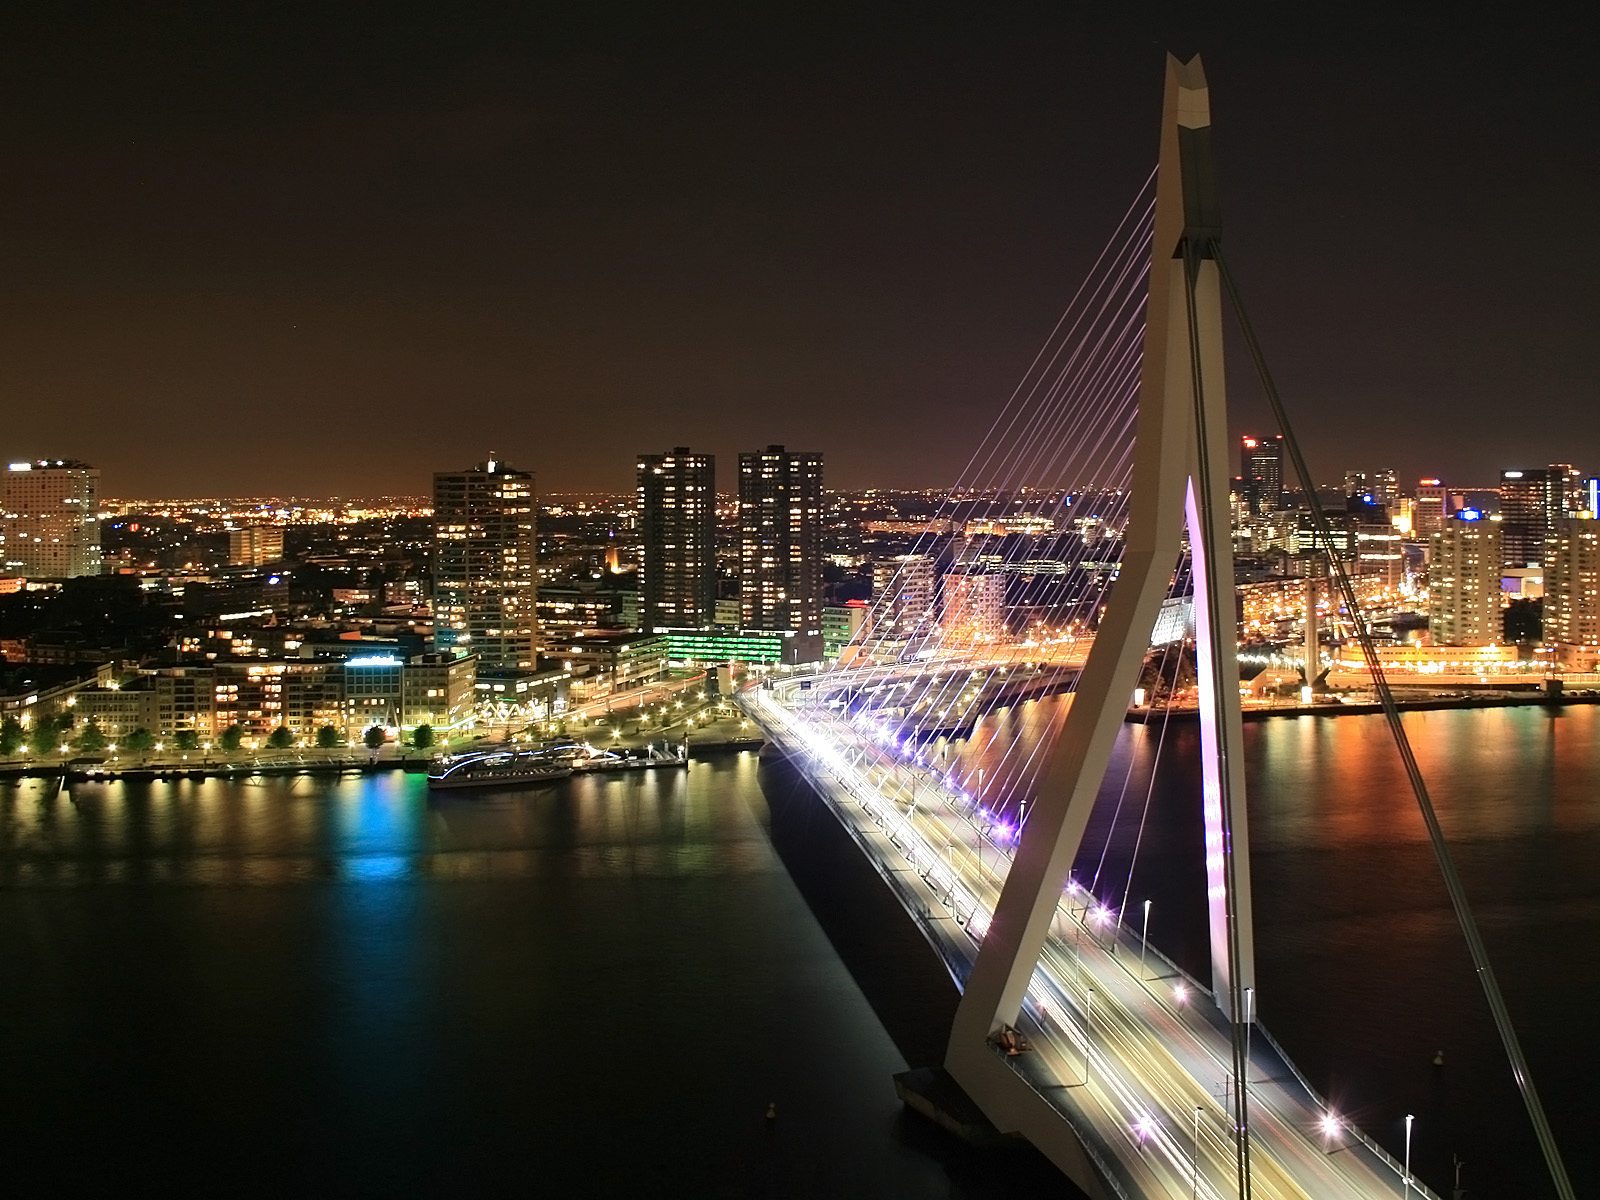 monde top 10 fond d'écran,paysage urbain,zone métropolitaine,nuit,pont suspendu,ville